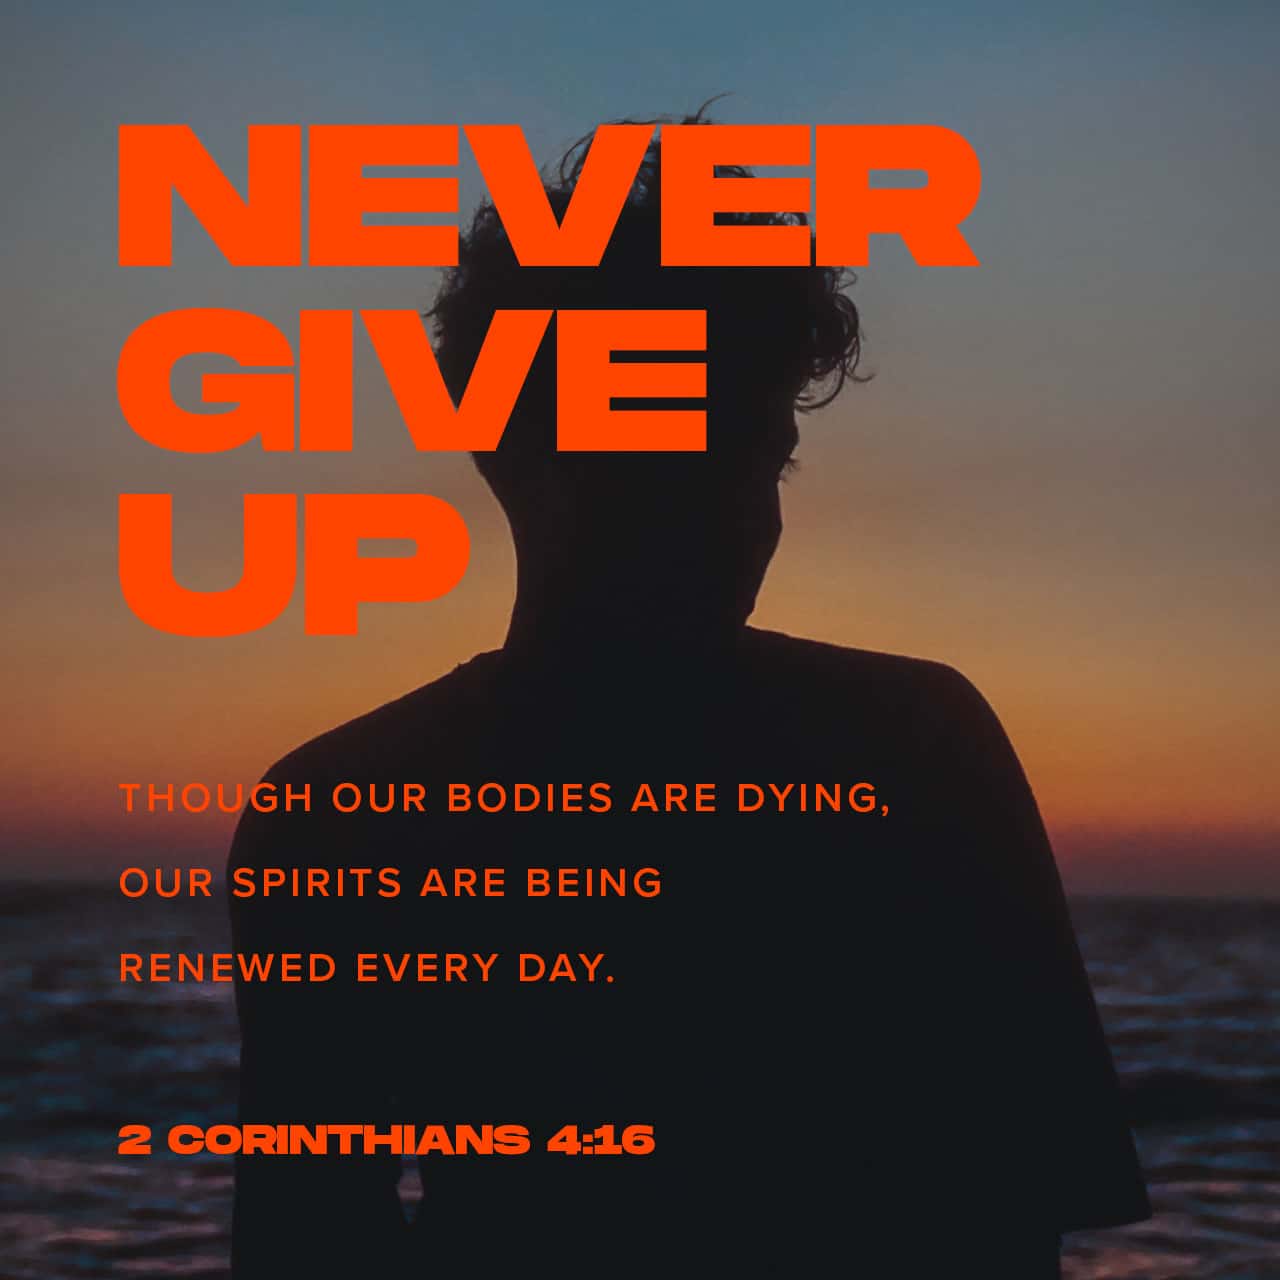 હૃદય ગુમાવશો નહીં - 2 કોરીંથી 4:16-18 પર ભક્તિ